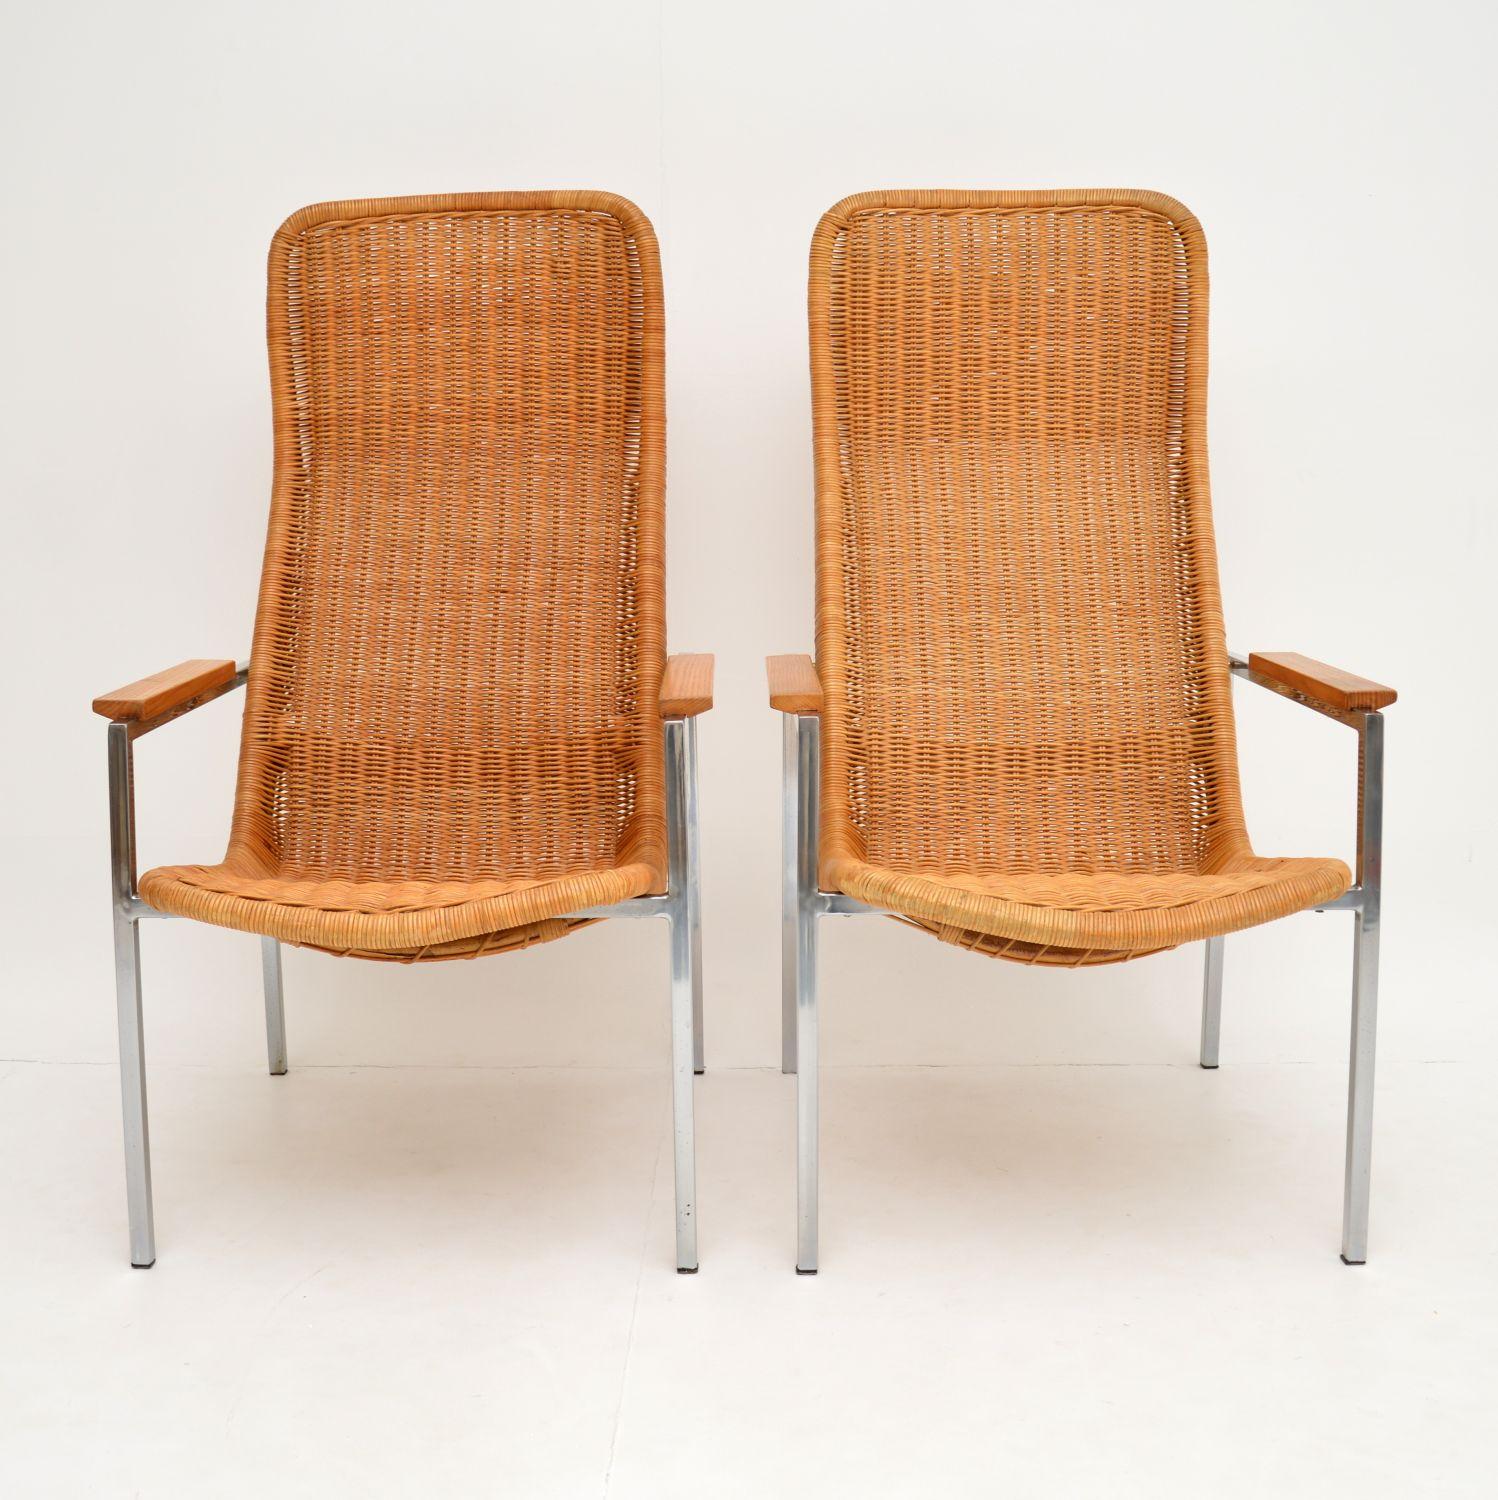 Ein atemberaubendes Paar Sessel mit hoher Rückenlehne, hergestellt in Holland in den 1960er Jahren. Sie wurden von Dirk Van Sliedrecht entworfen und von Gebroeders Jonkers hergestellt.

Sie sind von hervorragender Qualität und äußerst bequem. Sie